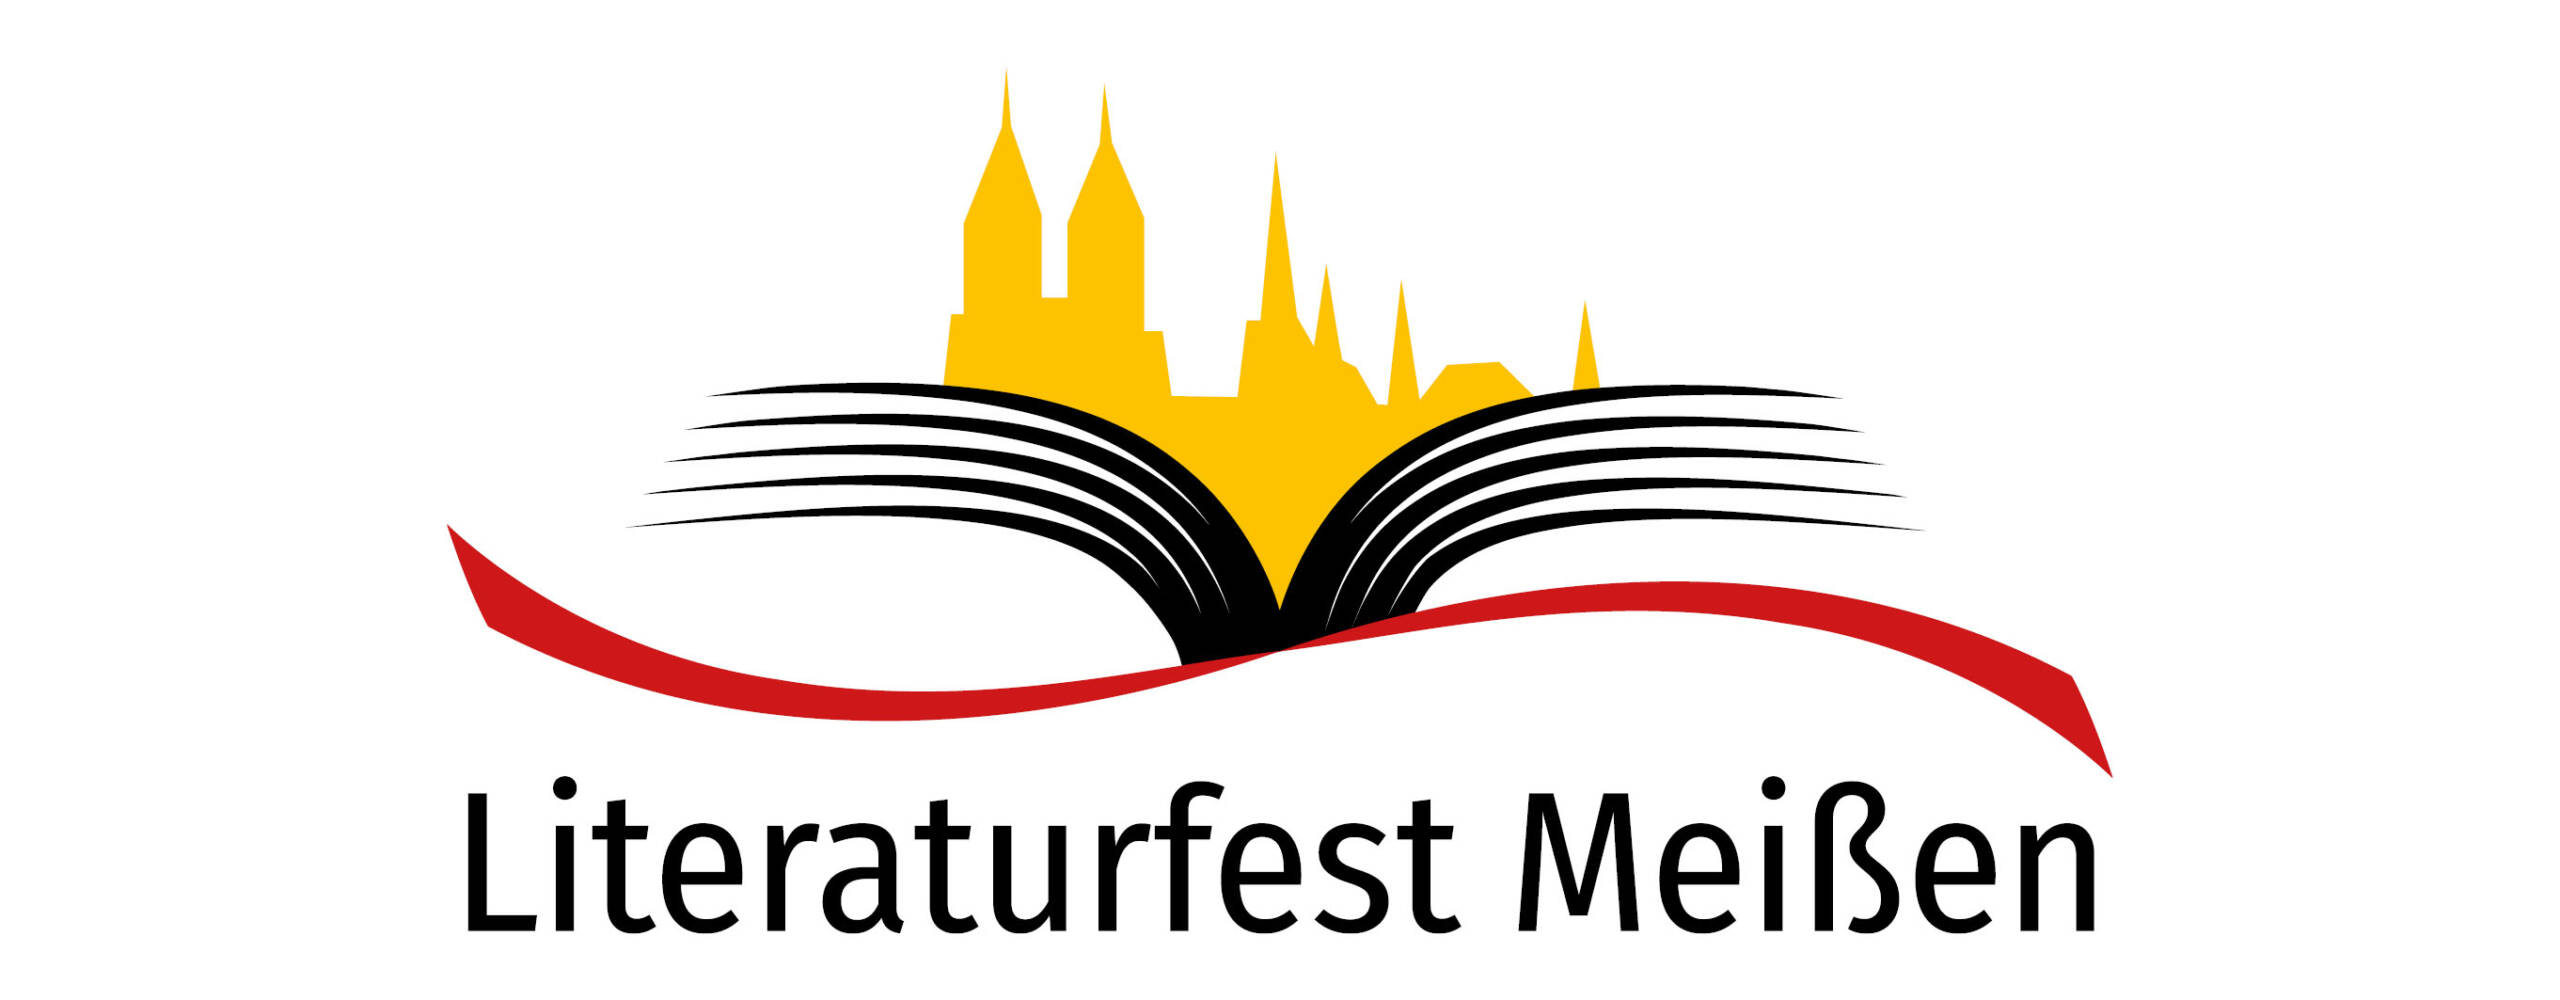 Literaturfest Meißen